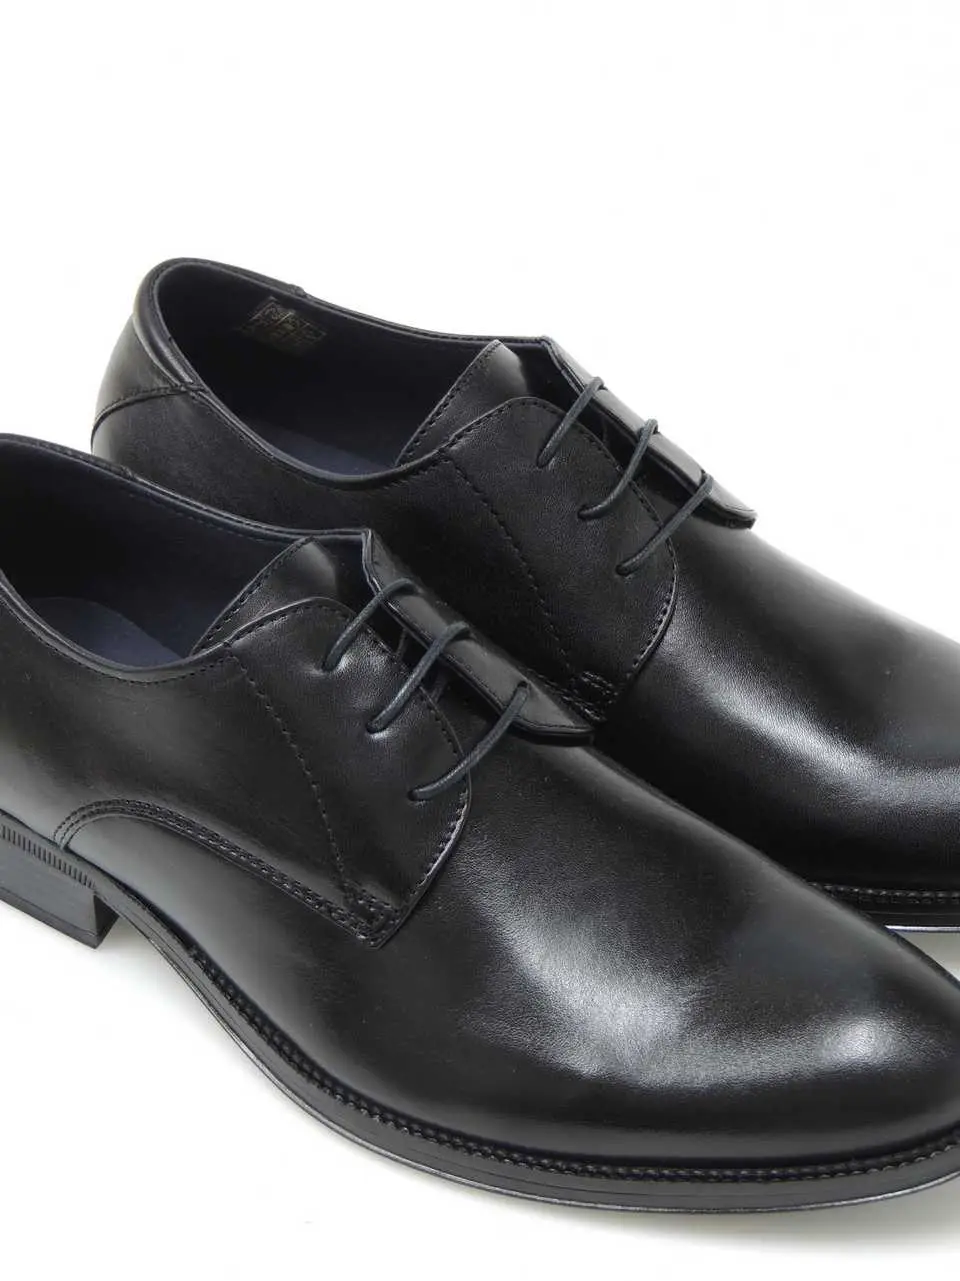 zapatos-blucher-baerchi-2751-piel-negro